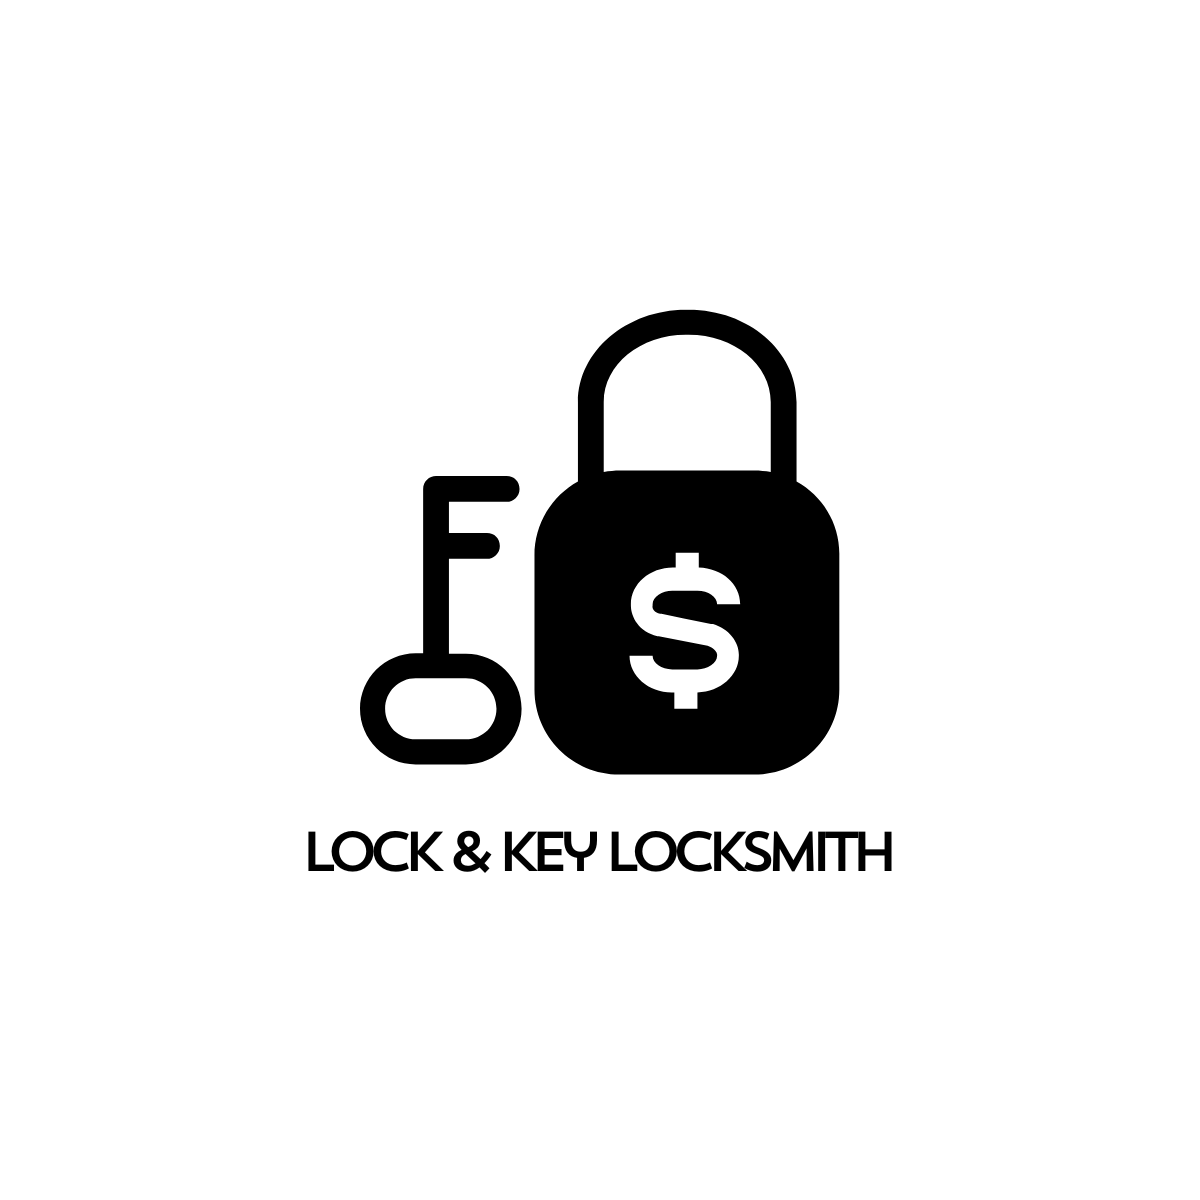 Lock & Key Locksmith of Philadelphia